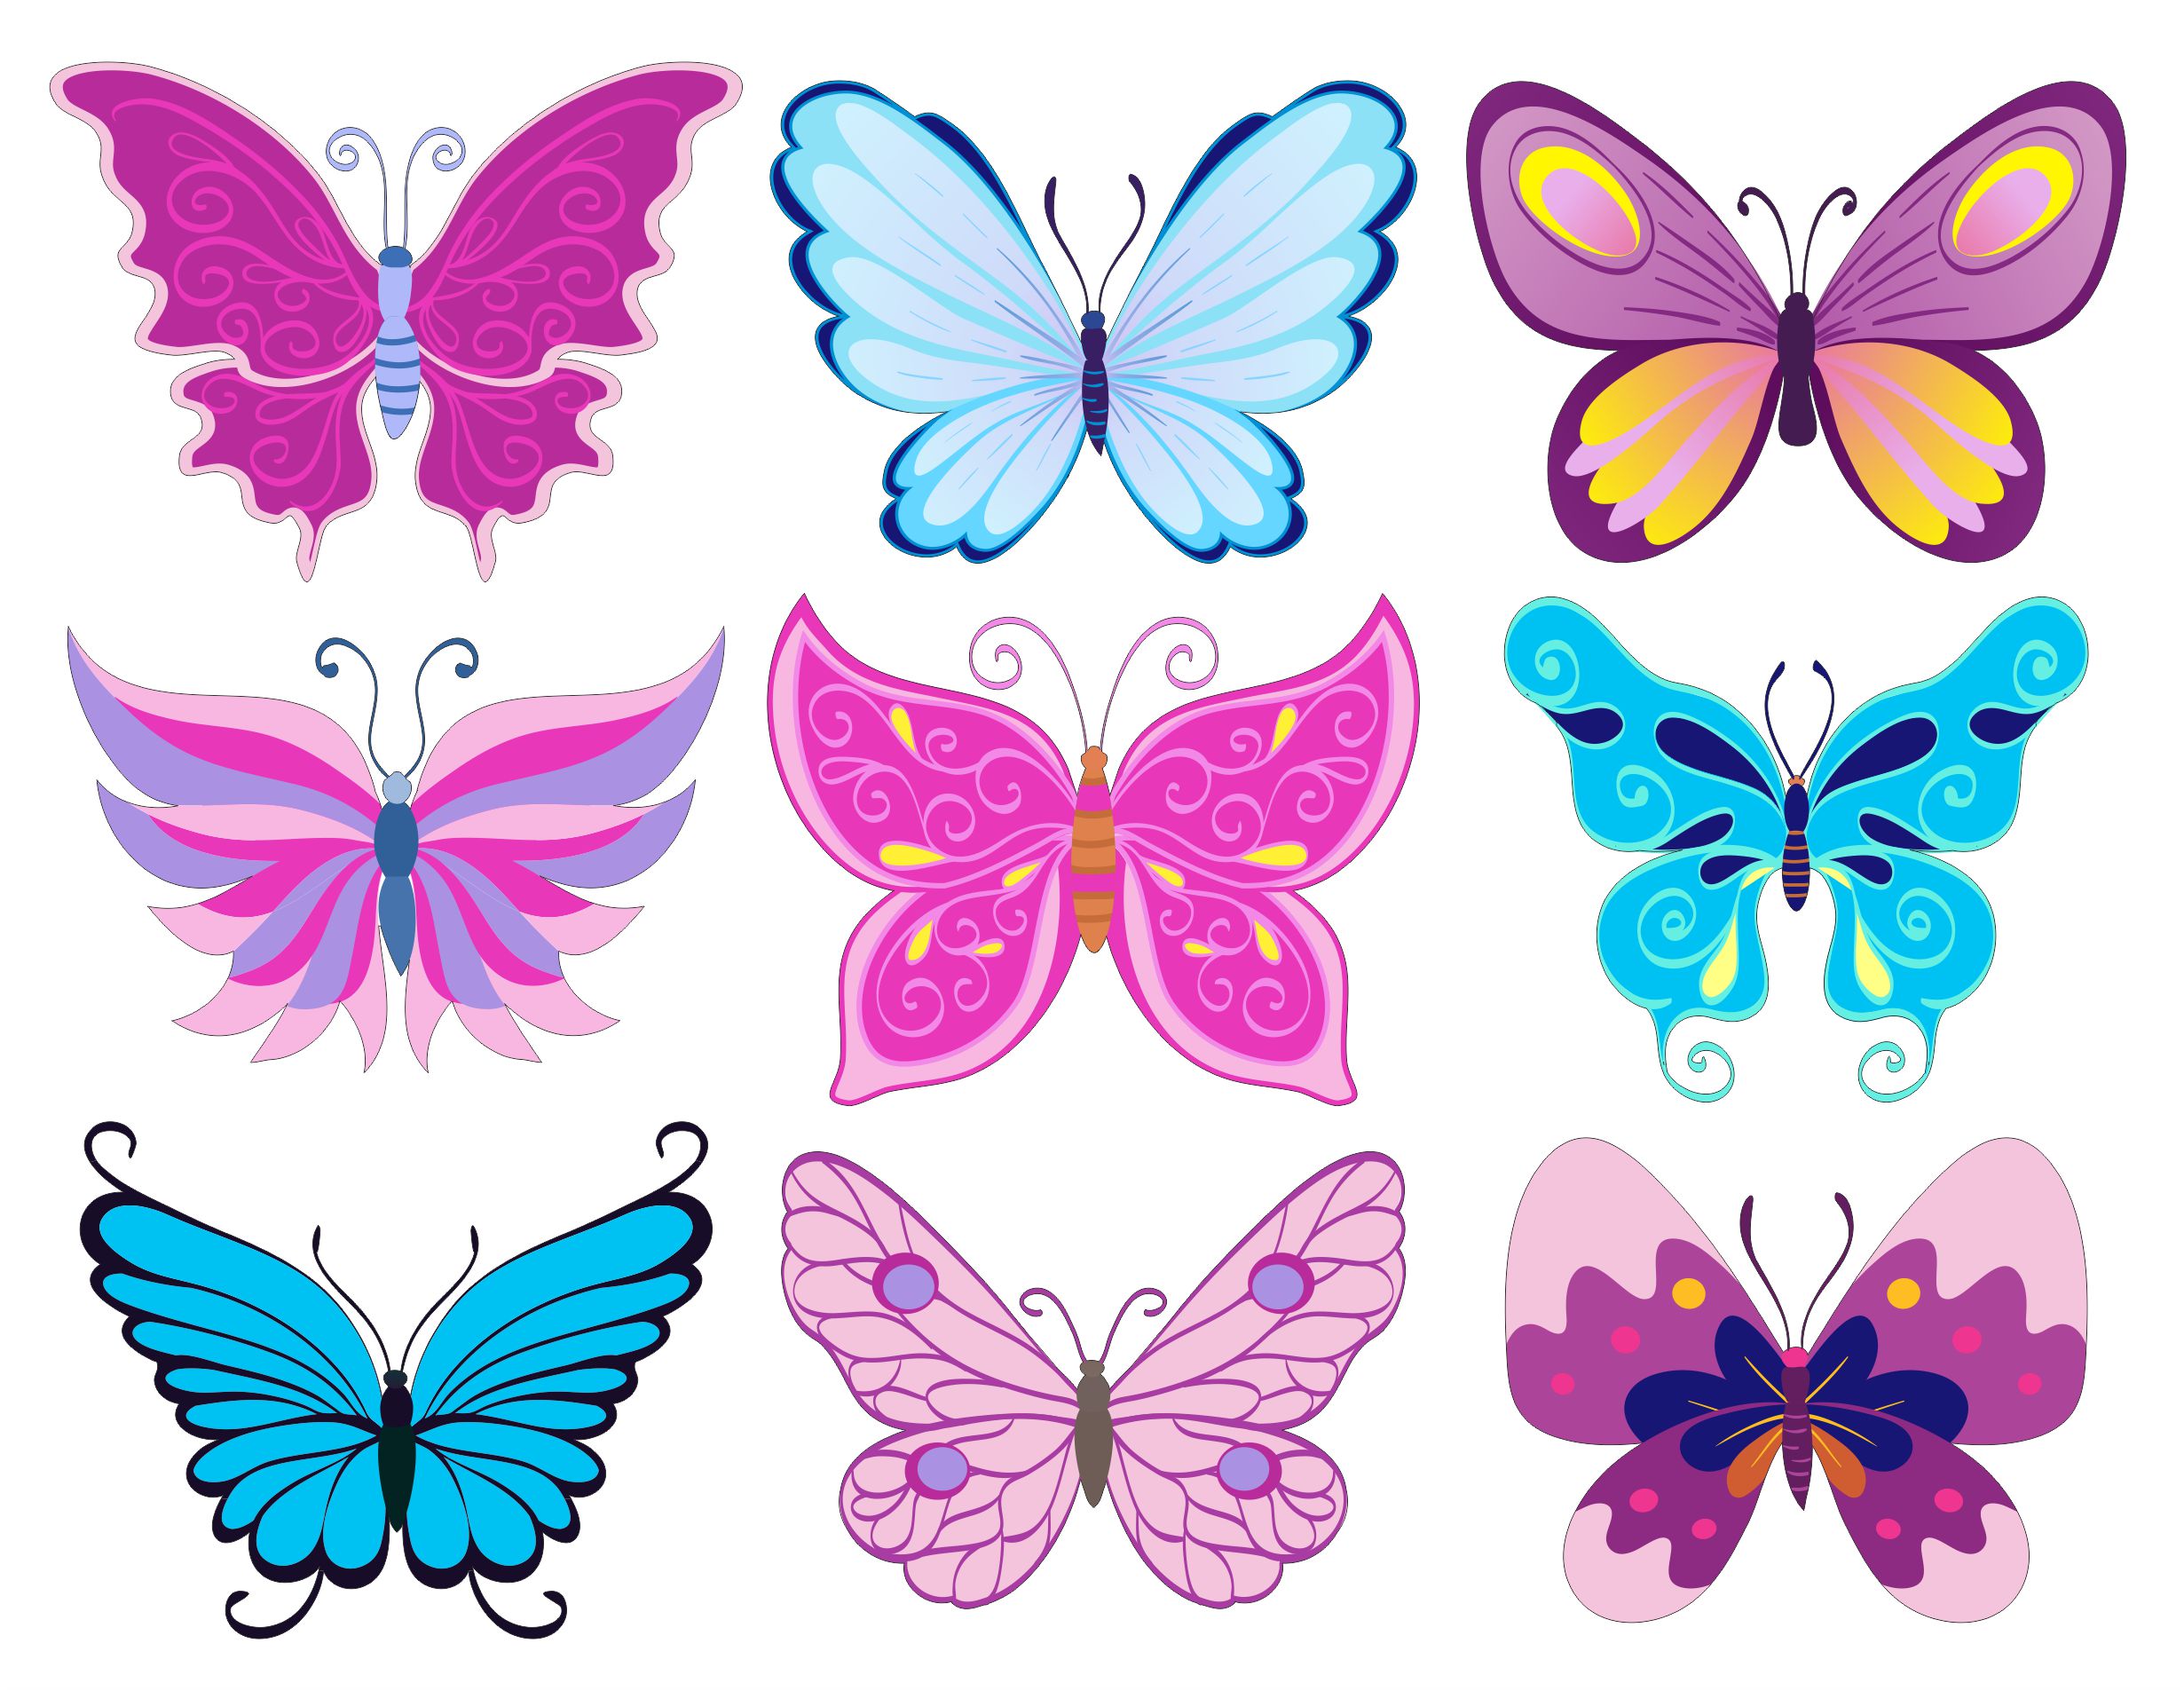 Шаблон бабочек для печати. Разноцветные бабочки. Бабочки для вырезания цветные. Бабочки трафарет цветные. Красивые цветные бабочки для вырезания.